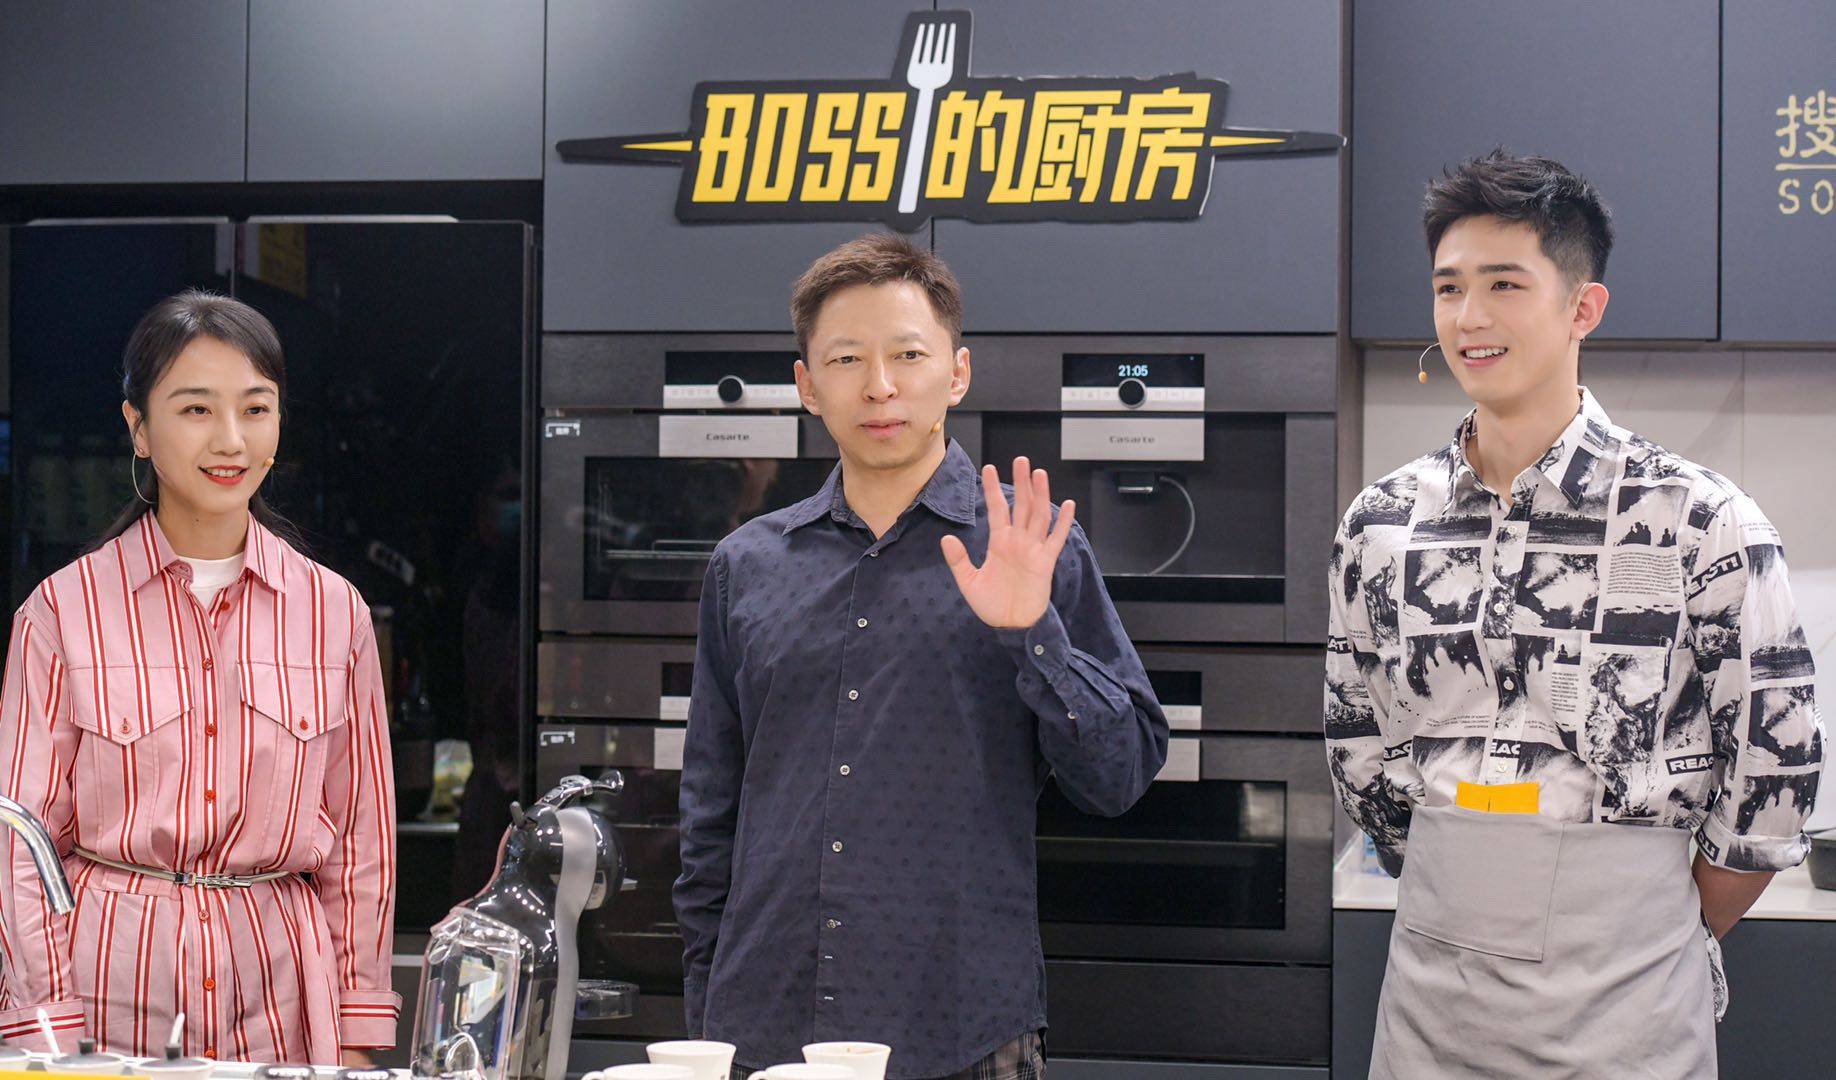 《创新直播带货 “BOSS的厨房”助推搜狐直播新玩法》